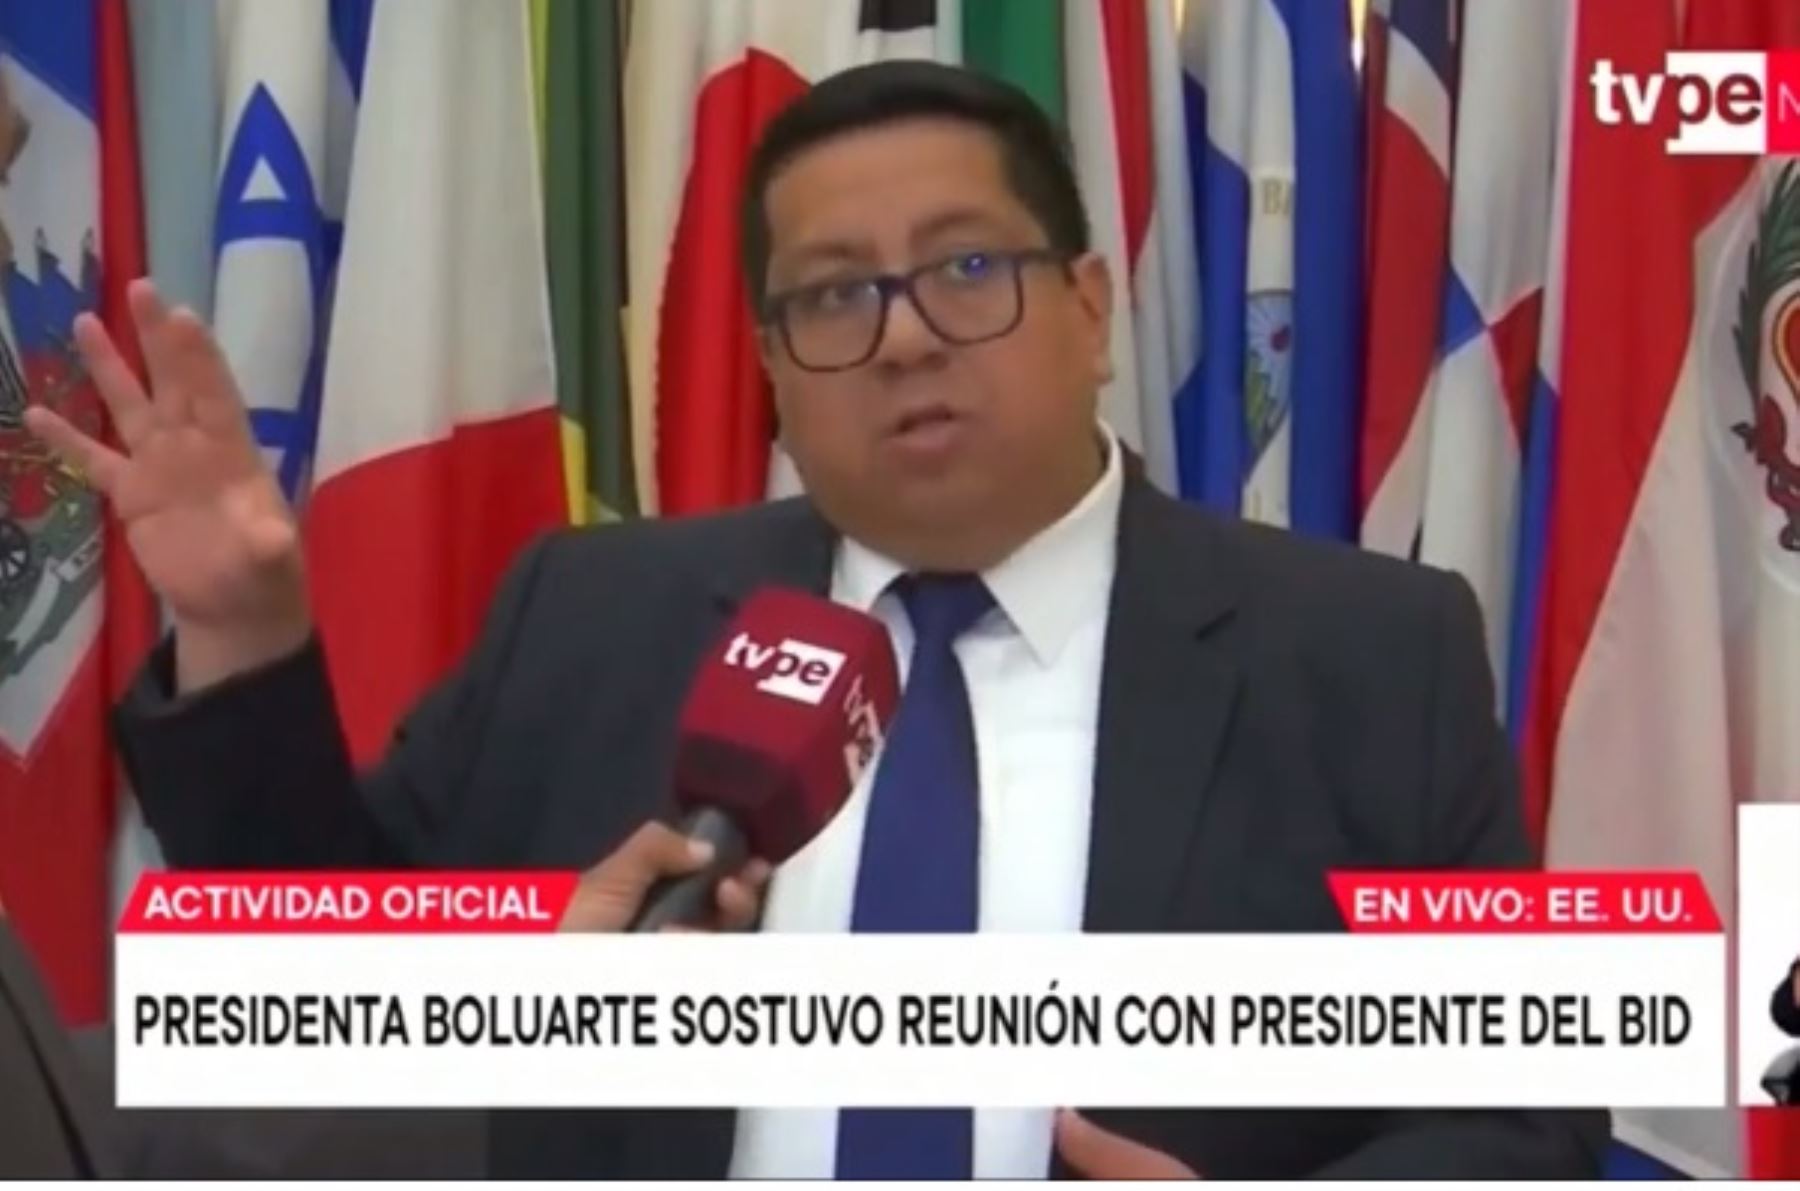 Ministro de Economía y Finanzas, Alex Contreras. Captura TV